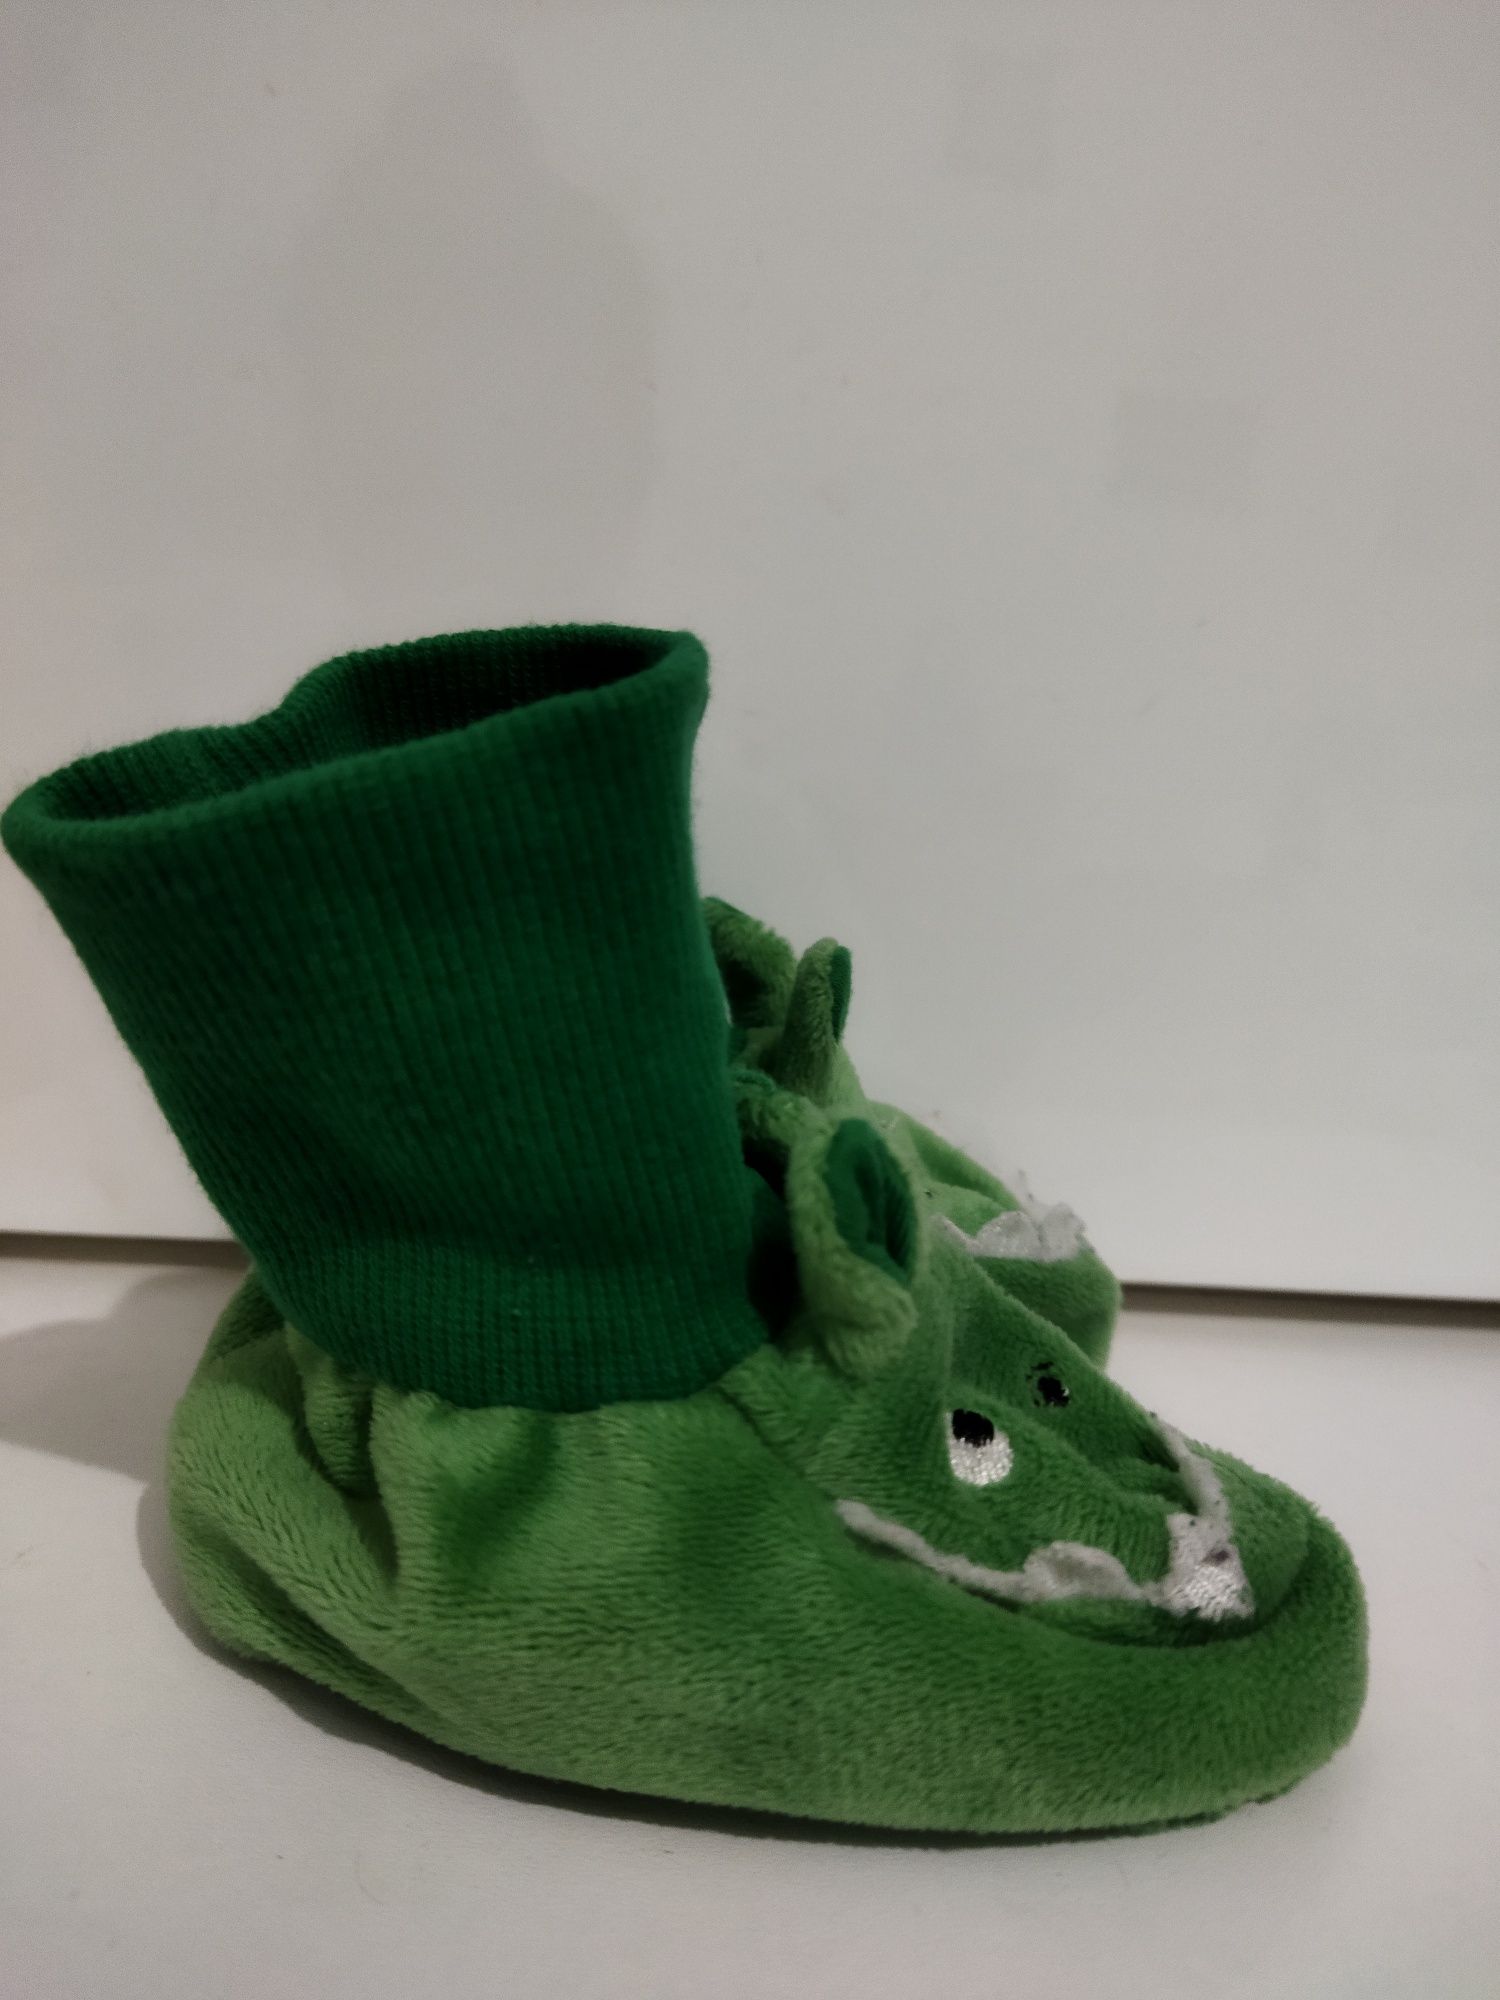 Papucei botoșei verzi pentru bebeluși copii vârstă 6-12 luni dinozaur